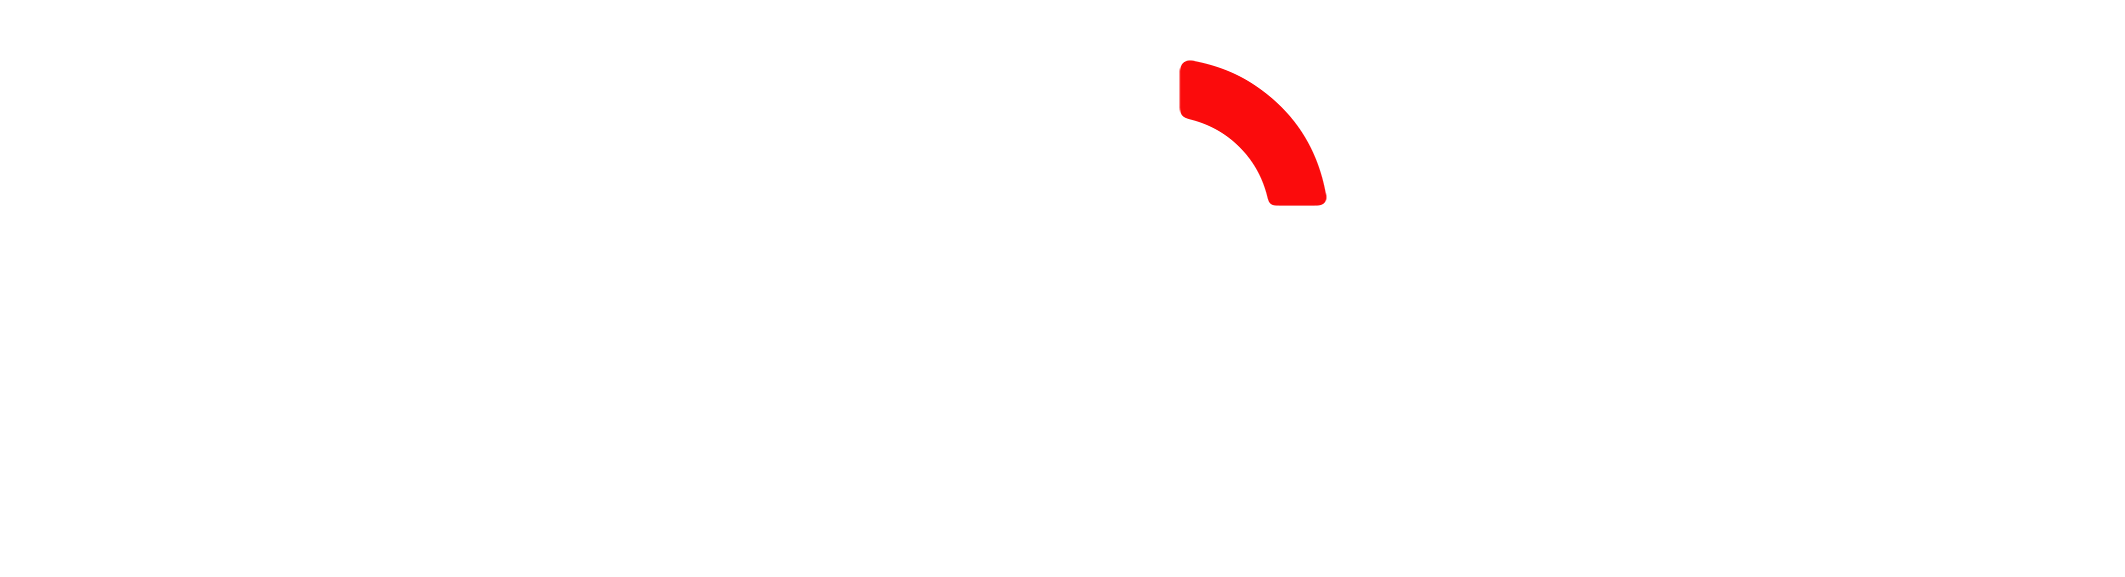 metotec footer logo